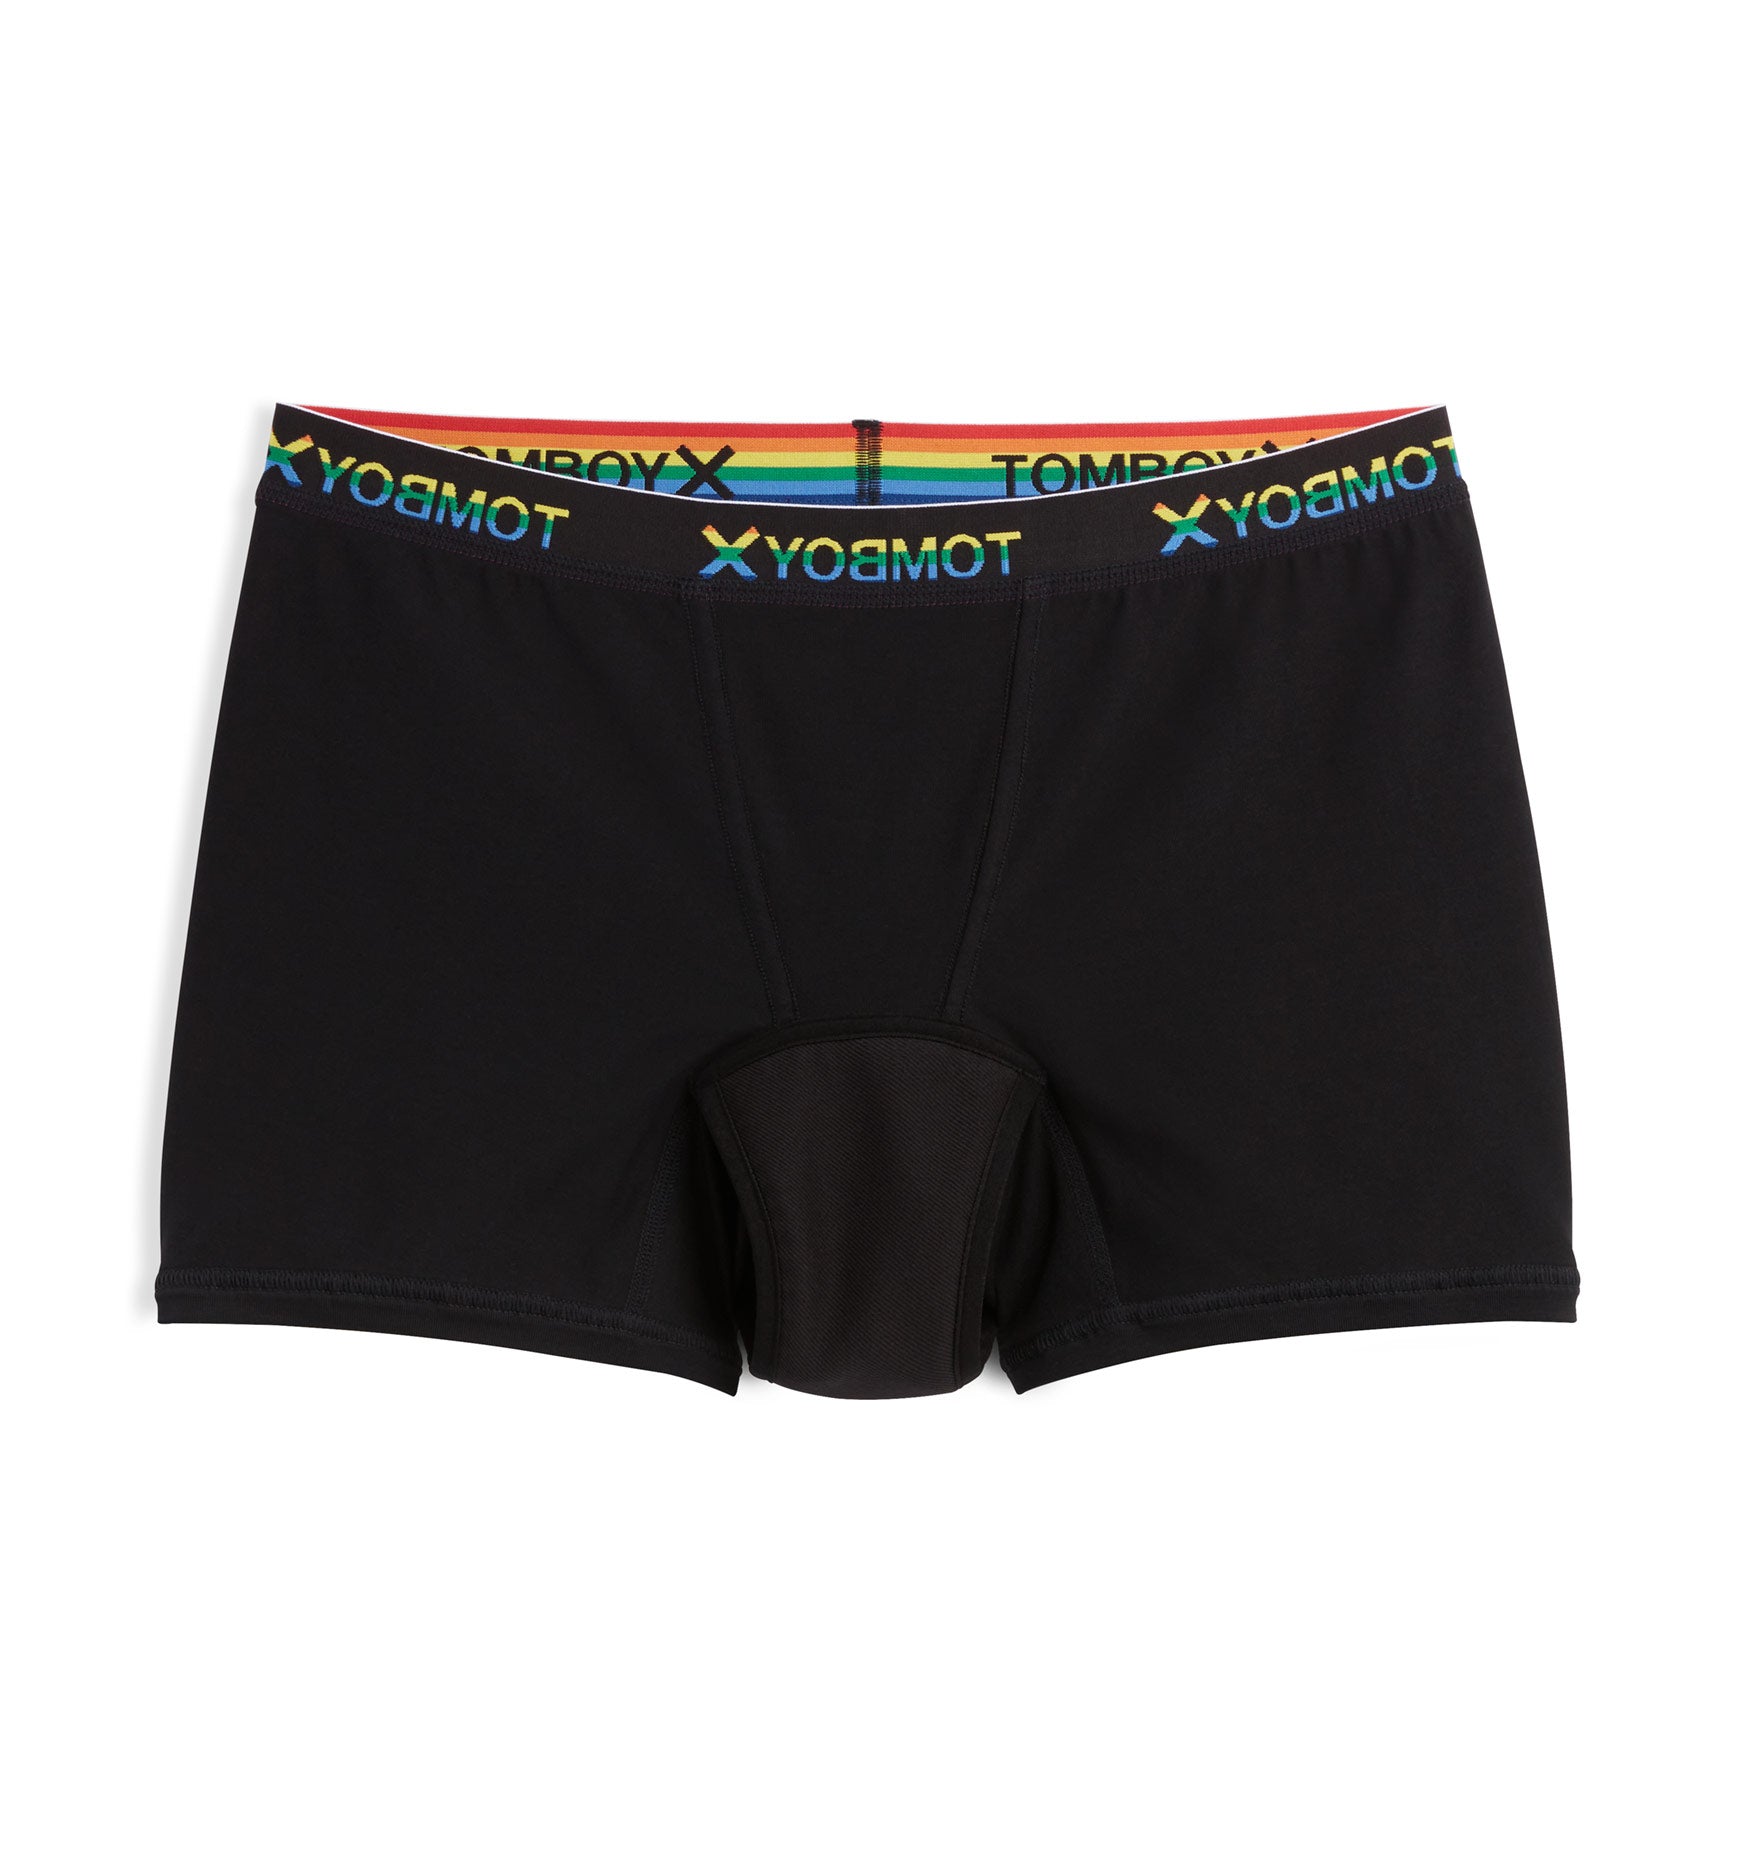 Tomboyx First Line Period Leakproof Boy Shorts Underwear, Cotton